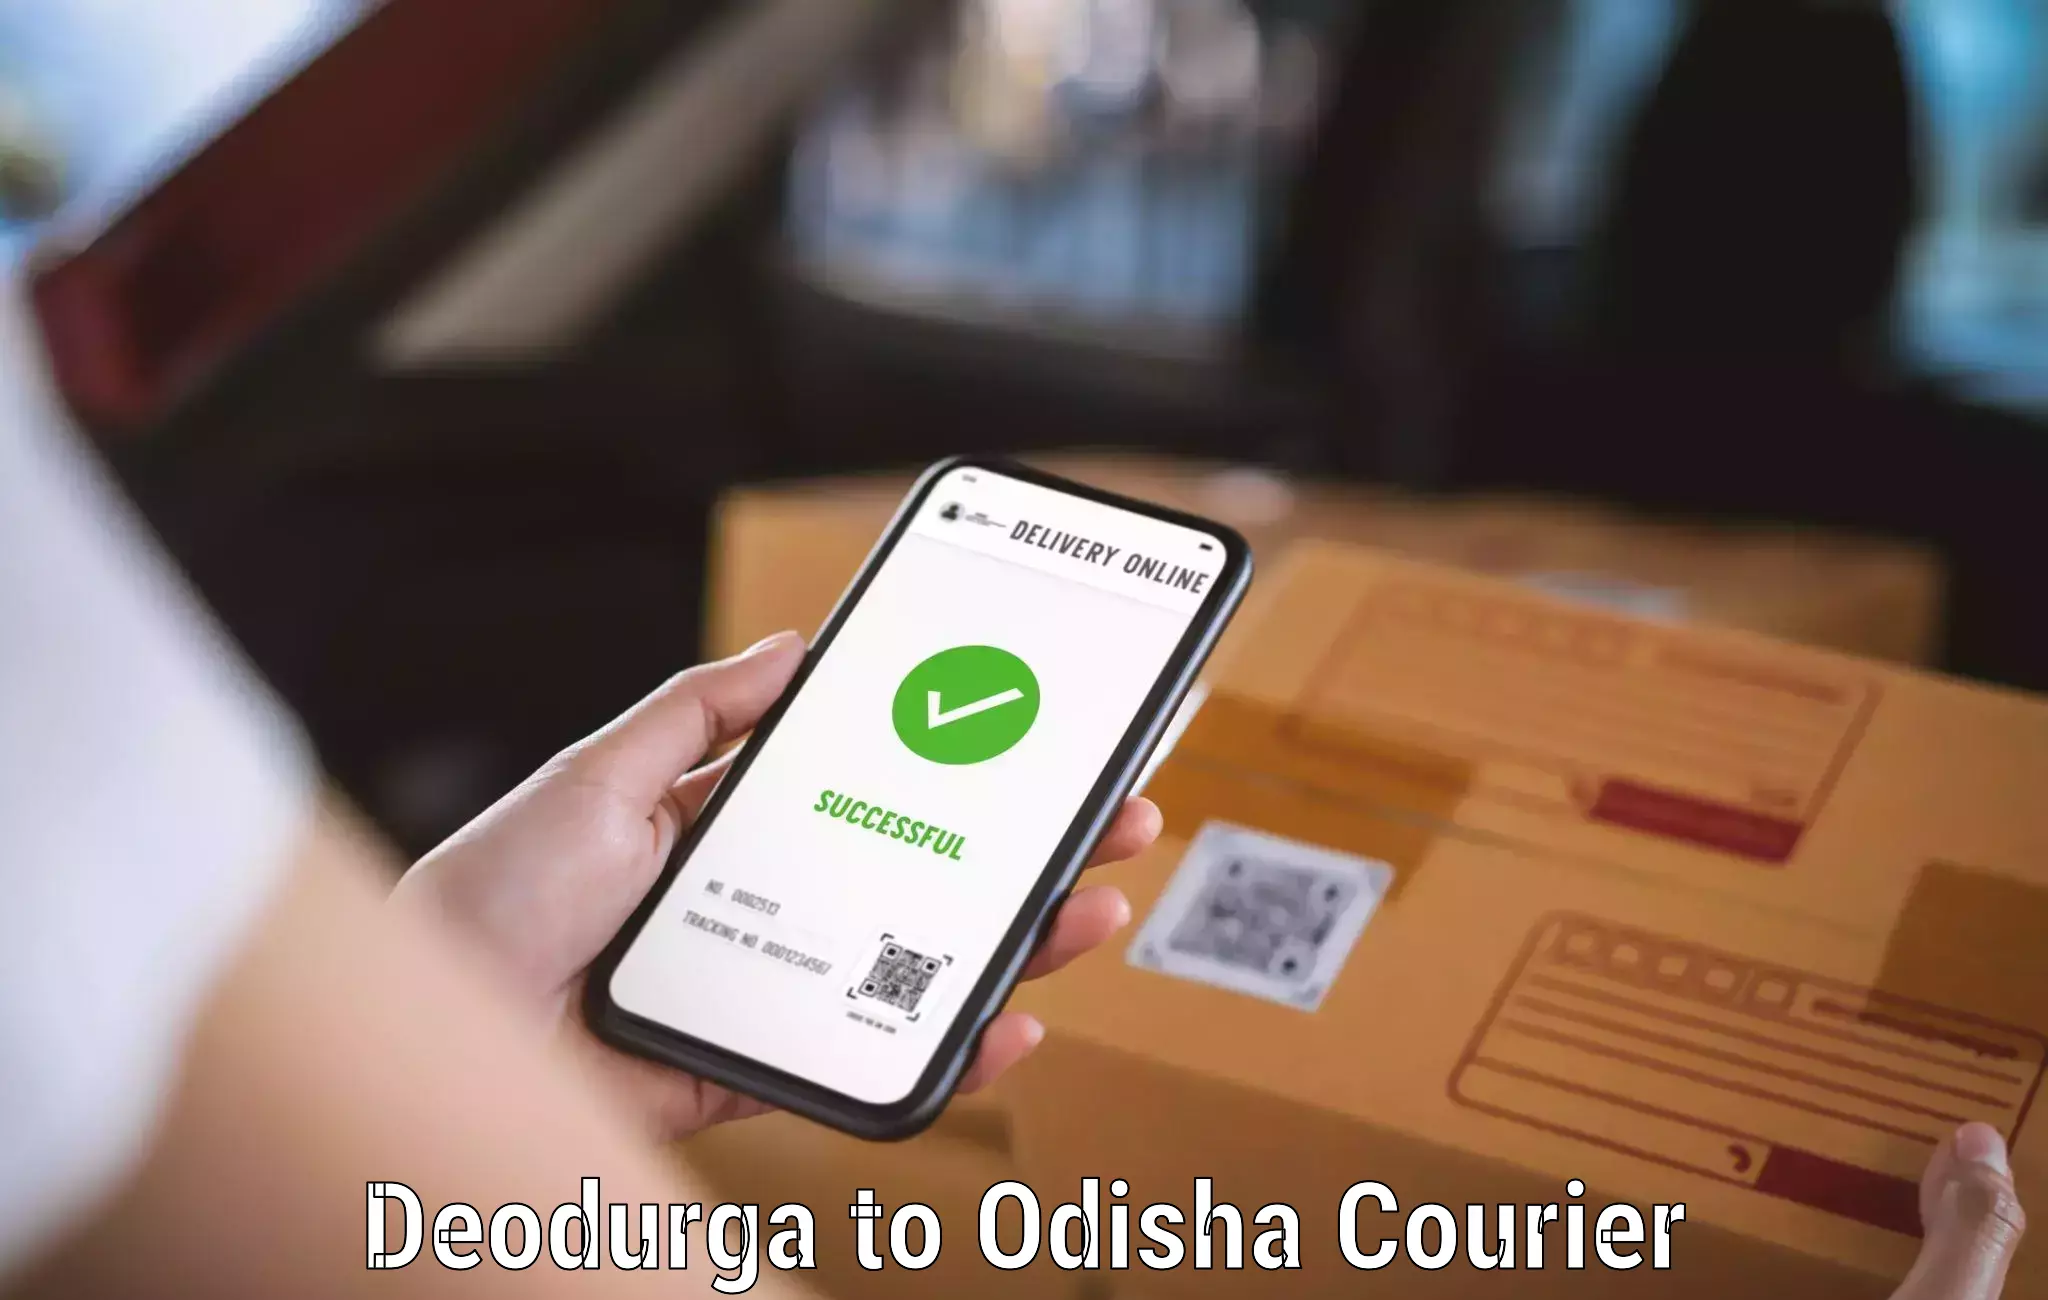 Urgent courier needs Deodurga to Parlakhemundi